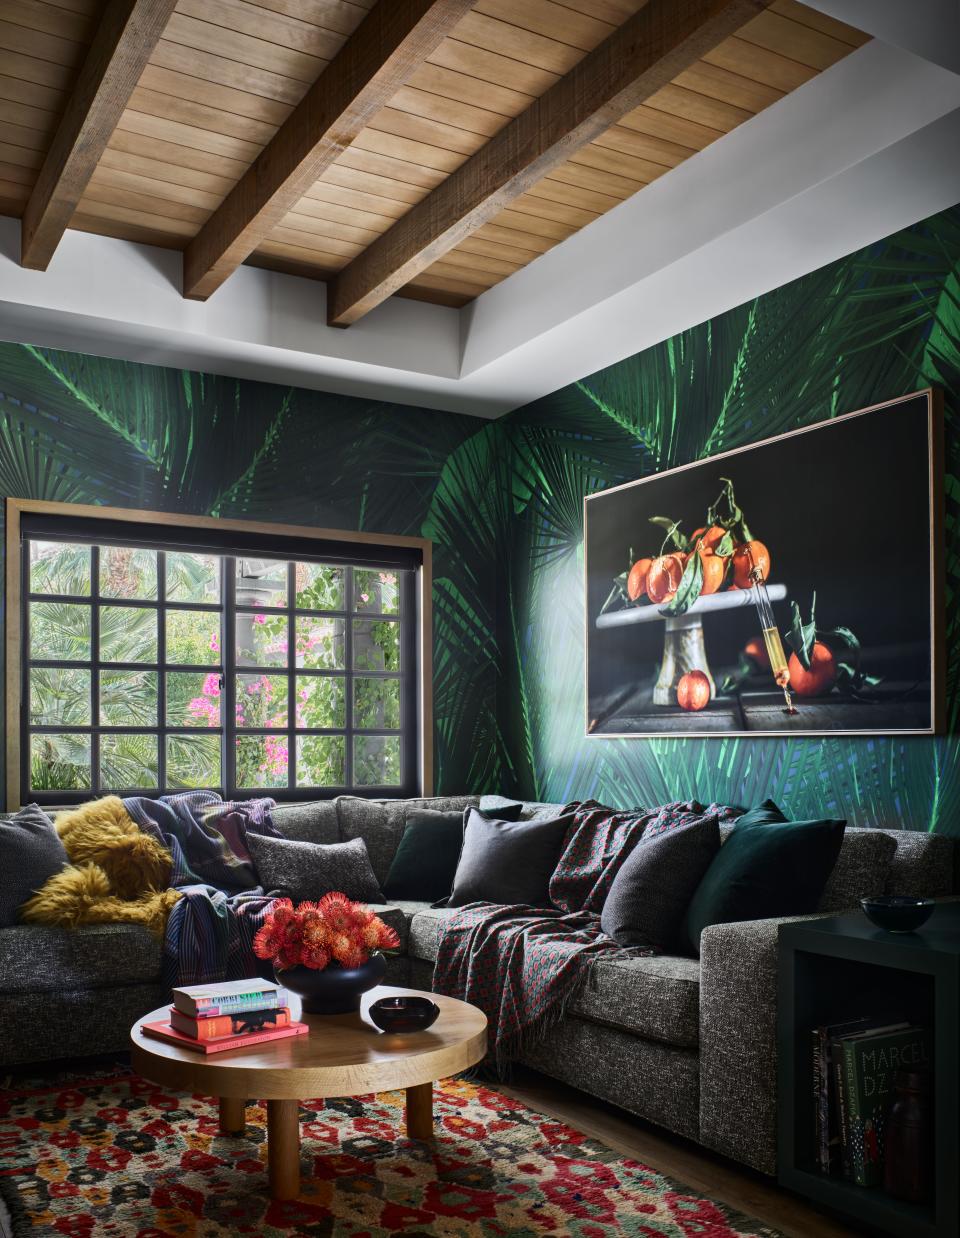 Lucas Interior Embraces Color to Modernize a Palm Springs Spanish Revival Home